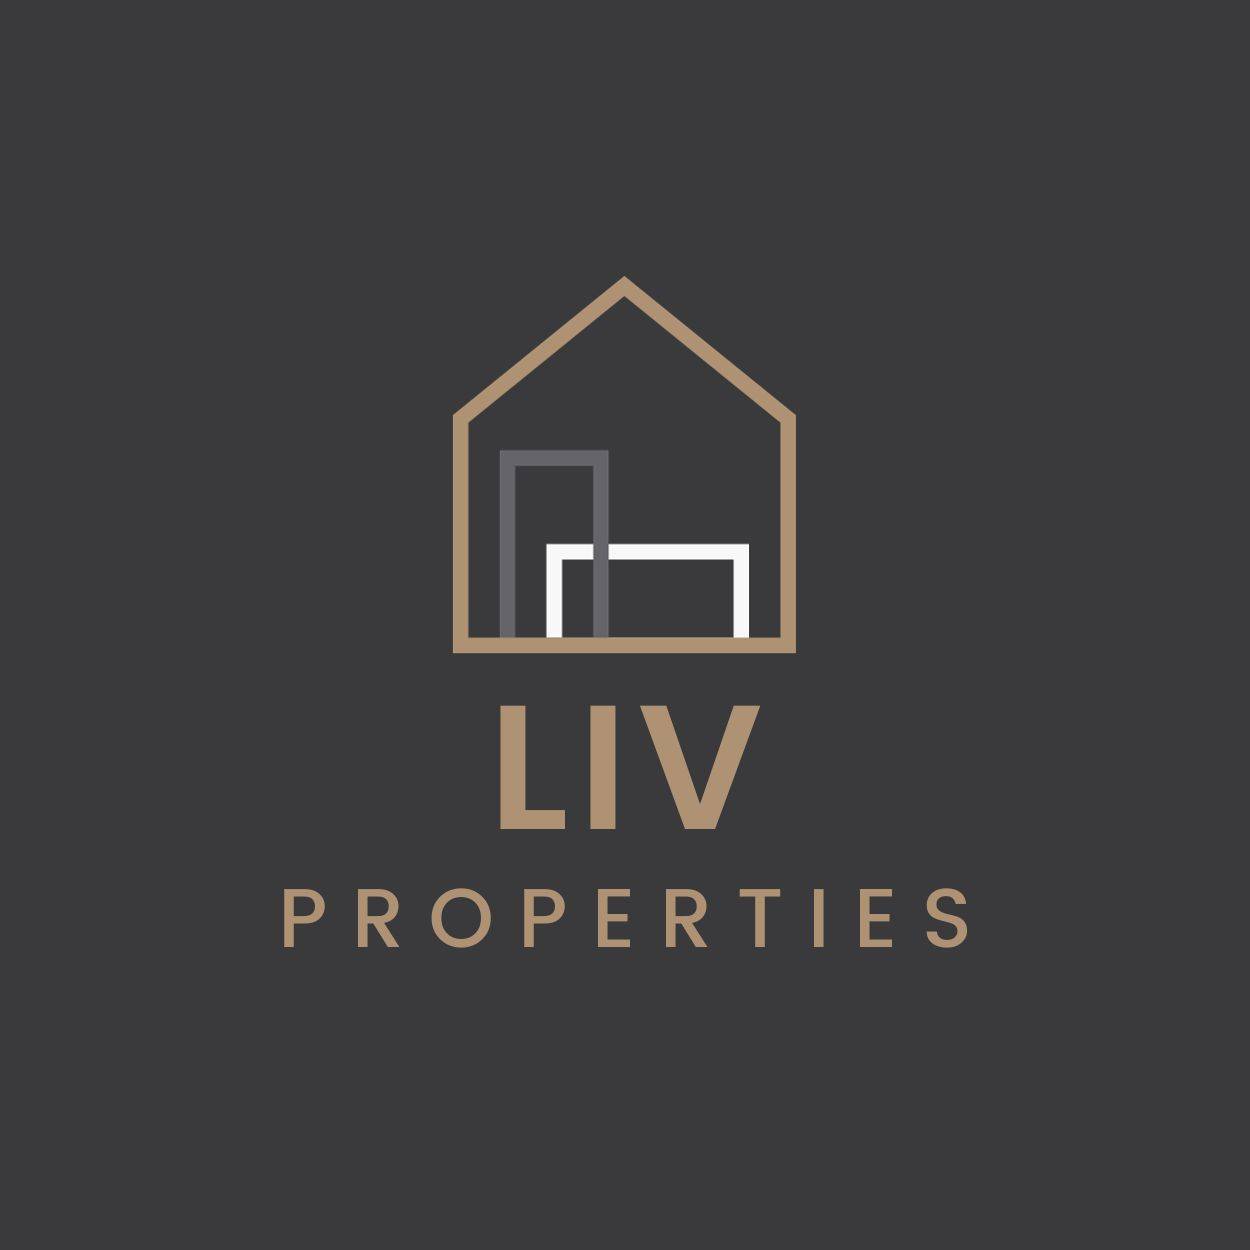 LIV Properties